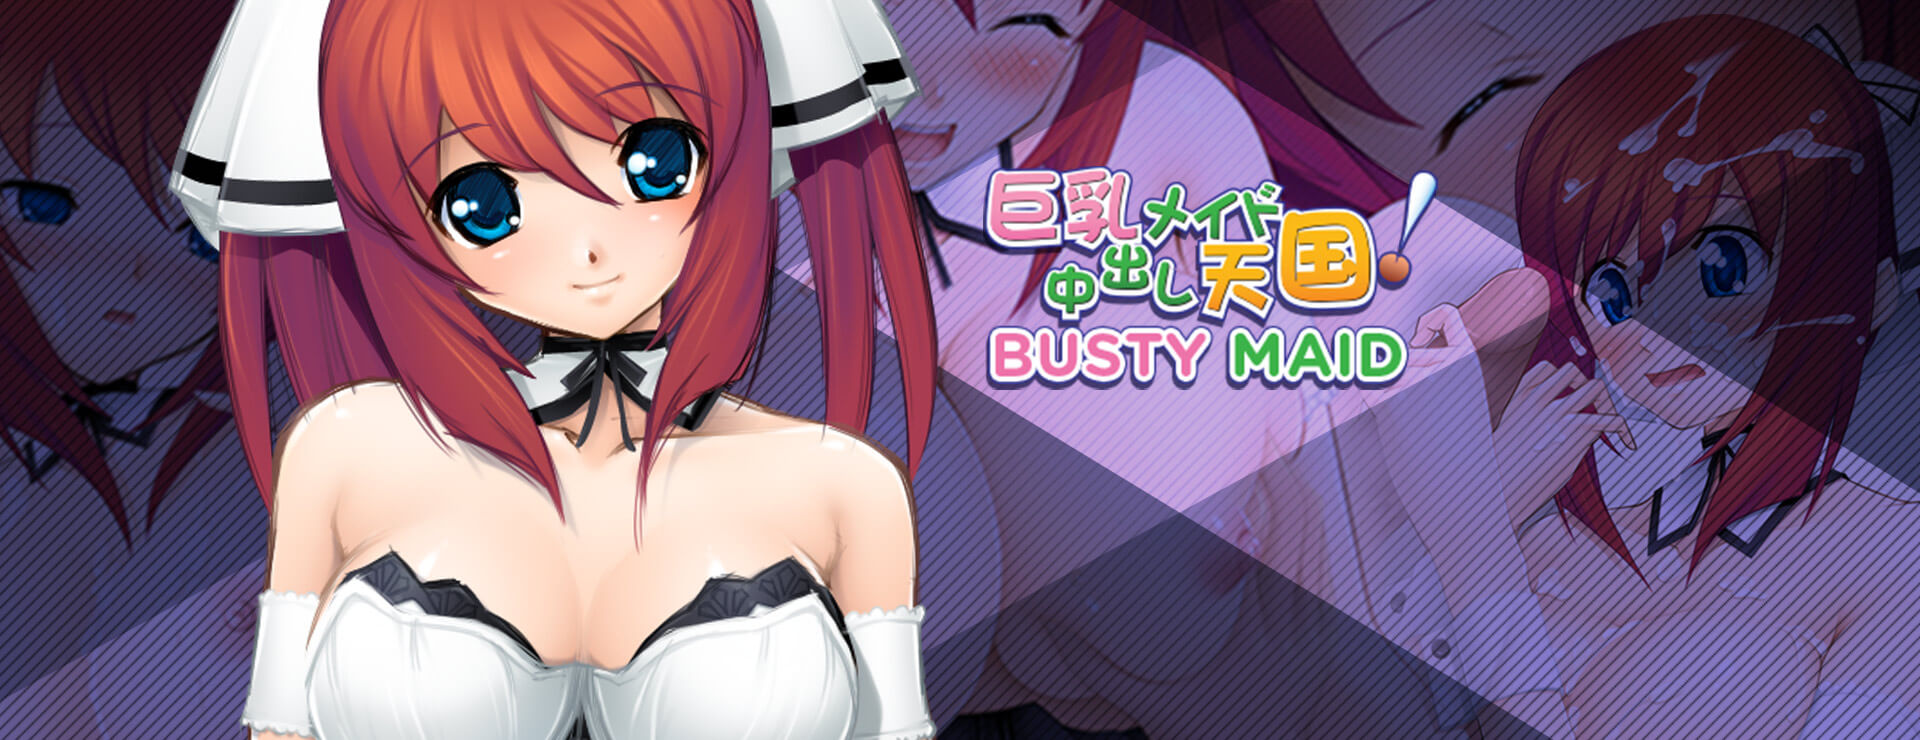 Busty Maid - Visual Novel Game